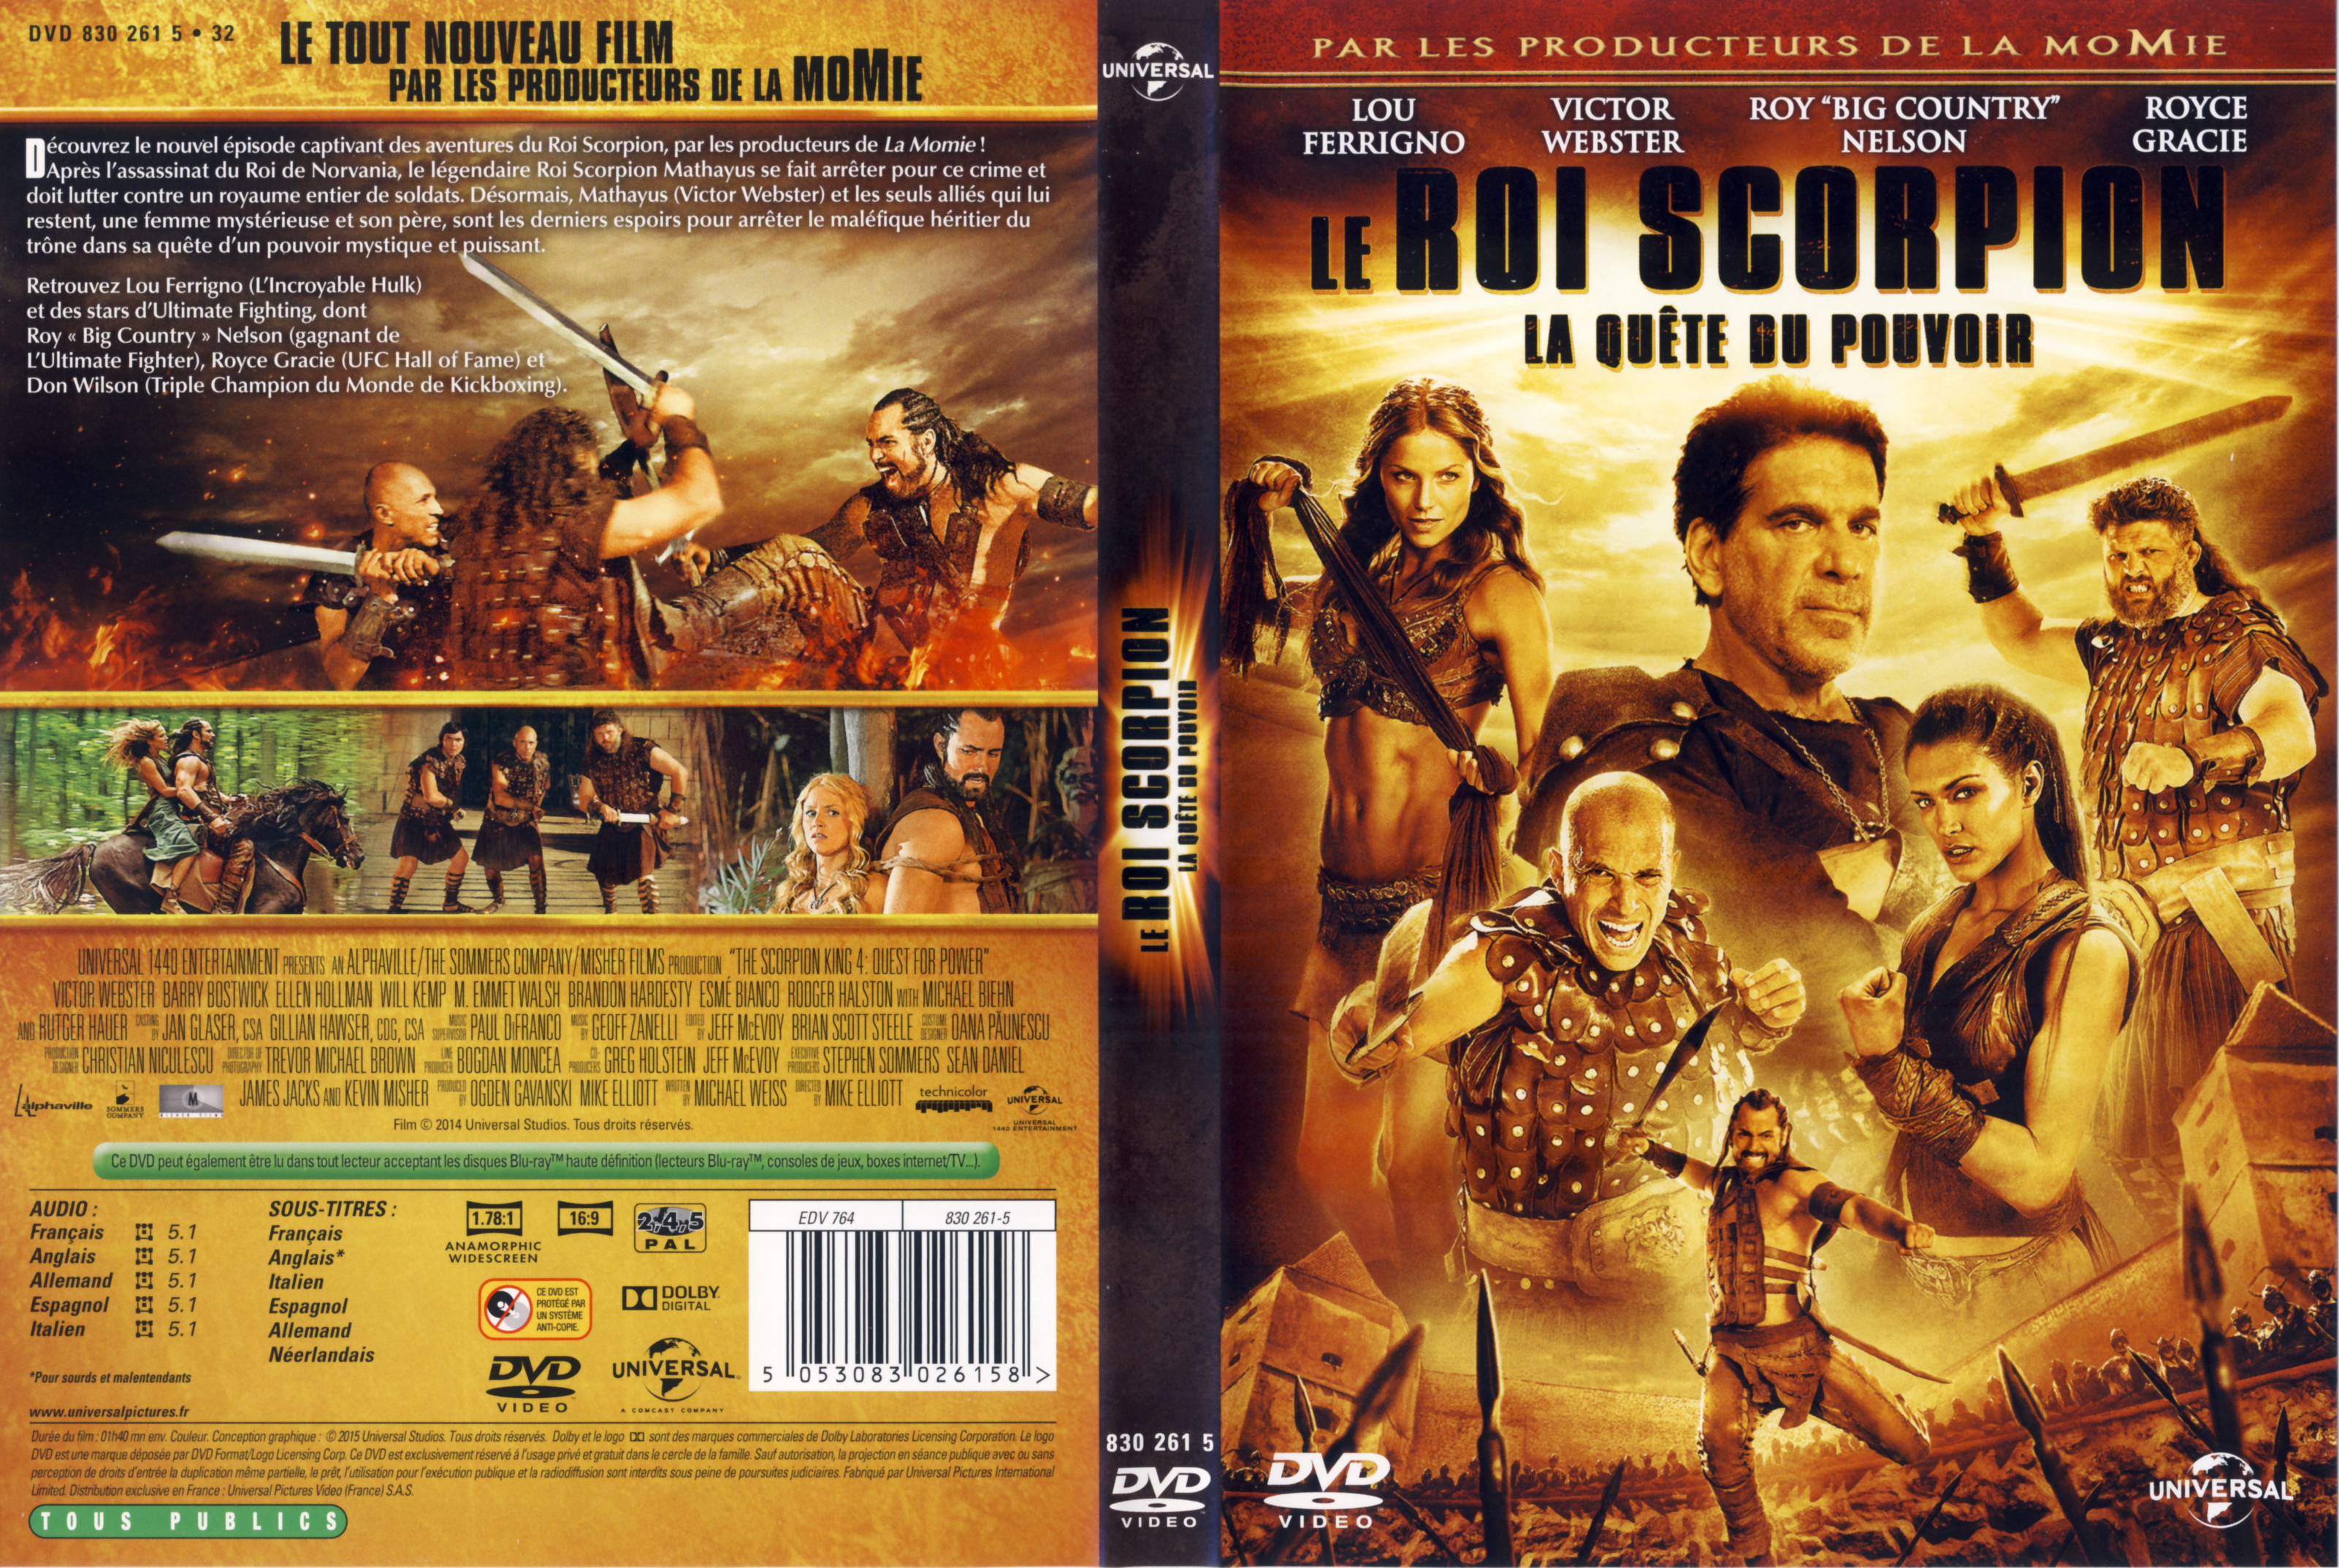 Jaquette DVD Le Roi Scorpion 4 La qute du pouvoir